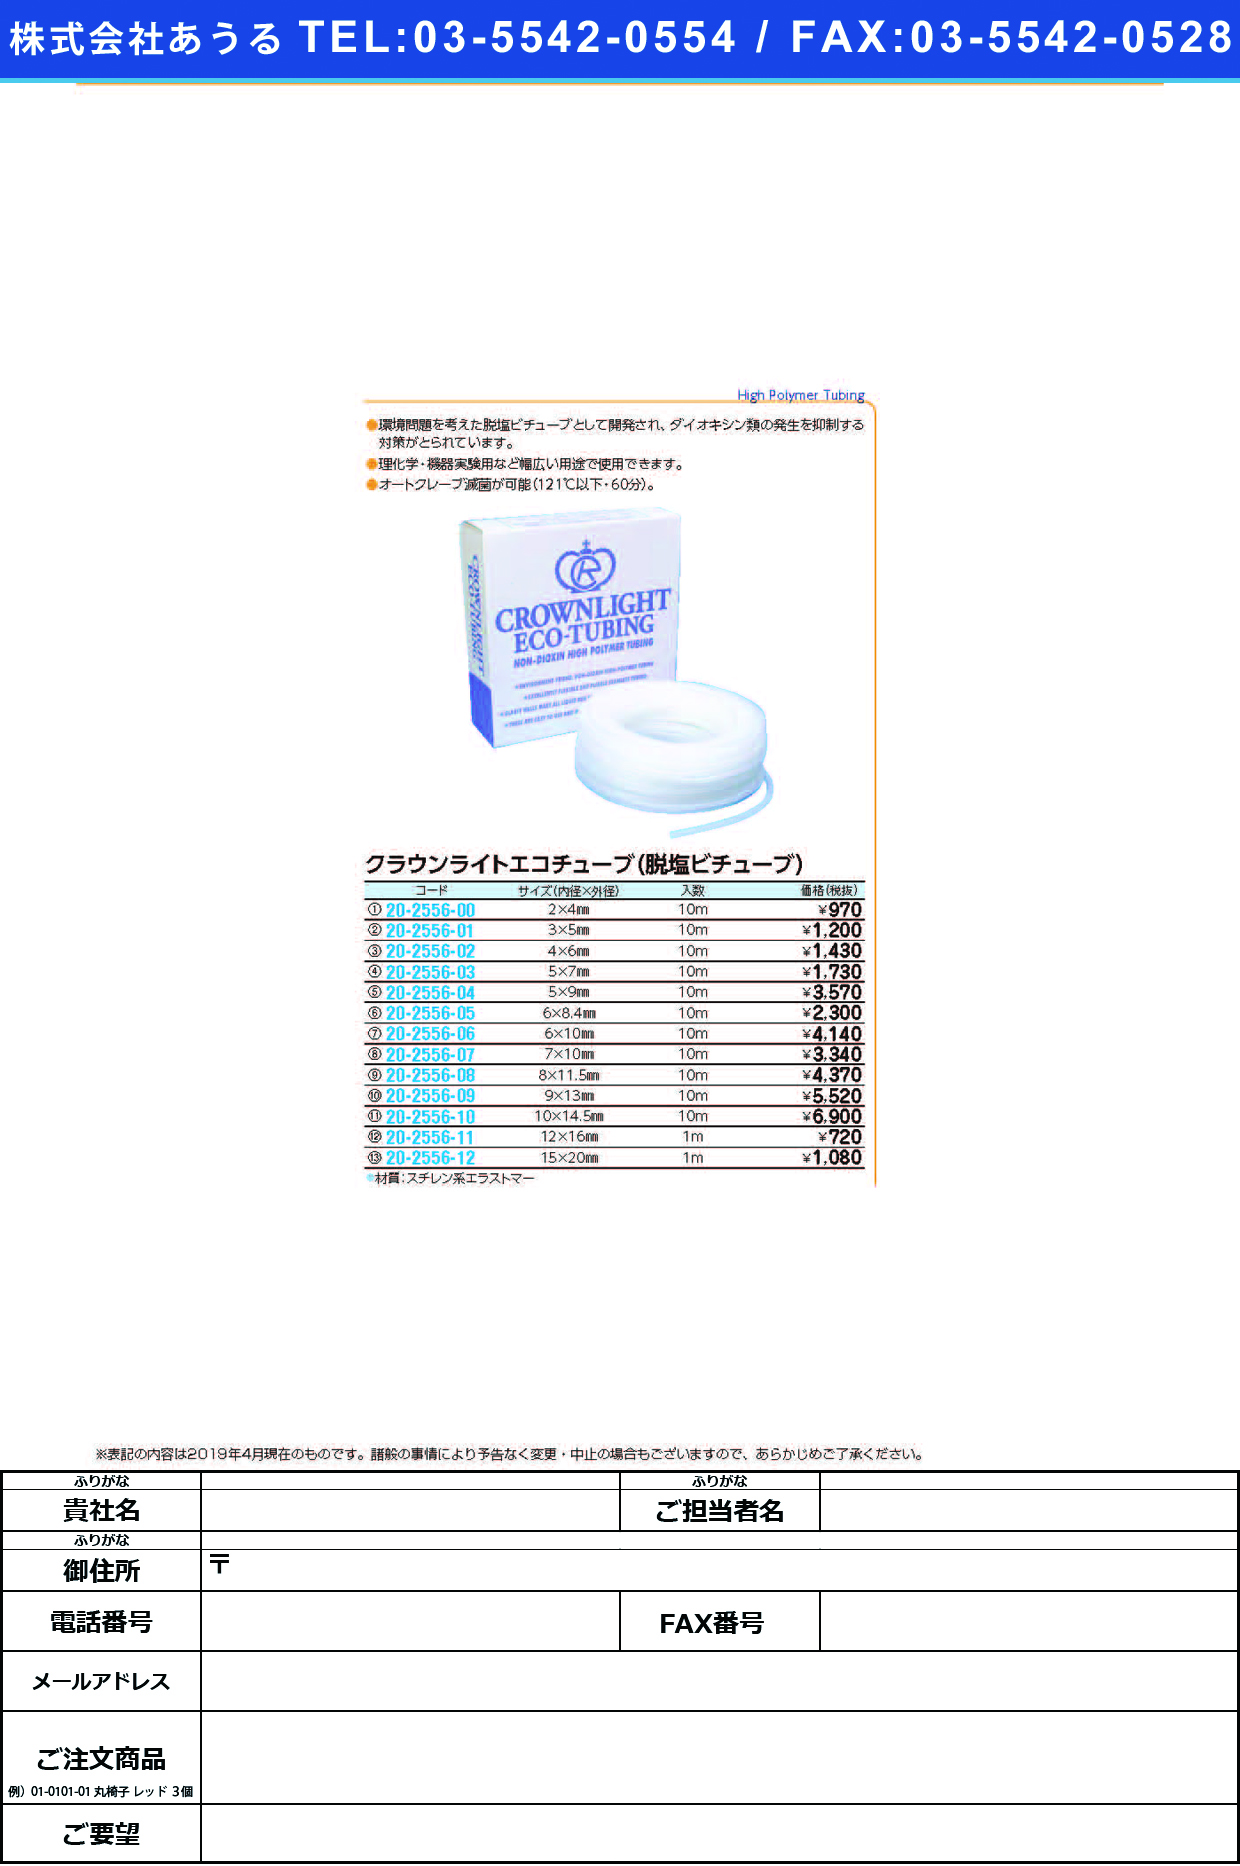 (20-2556-00)クラウンライトエコチューブ 2.0X4.0(10Mｲﾘ) ｸﾗｳﾝﾗｲﾄｴｺﾁｭｰﾌﾞ【1袋単位】【2019年カタログ商品】